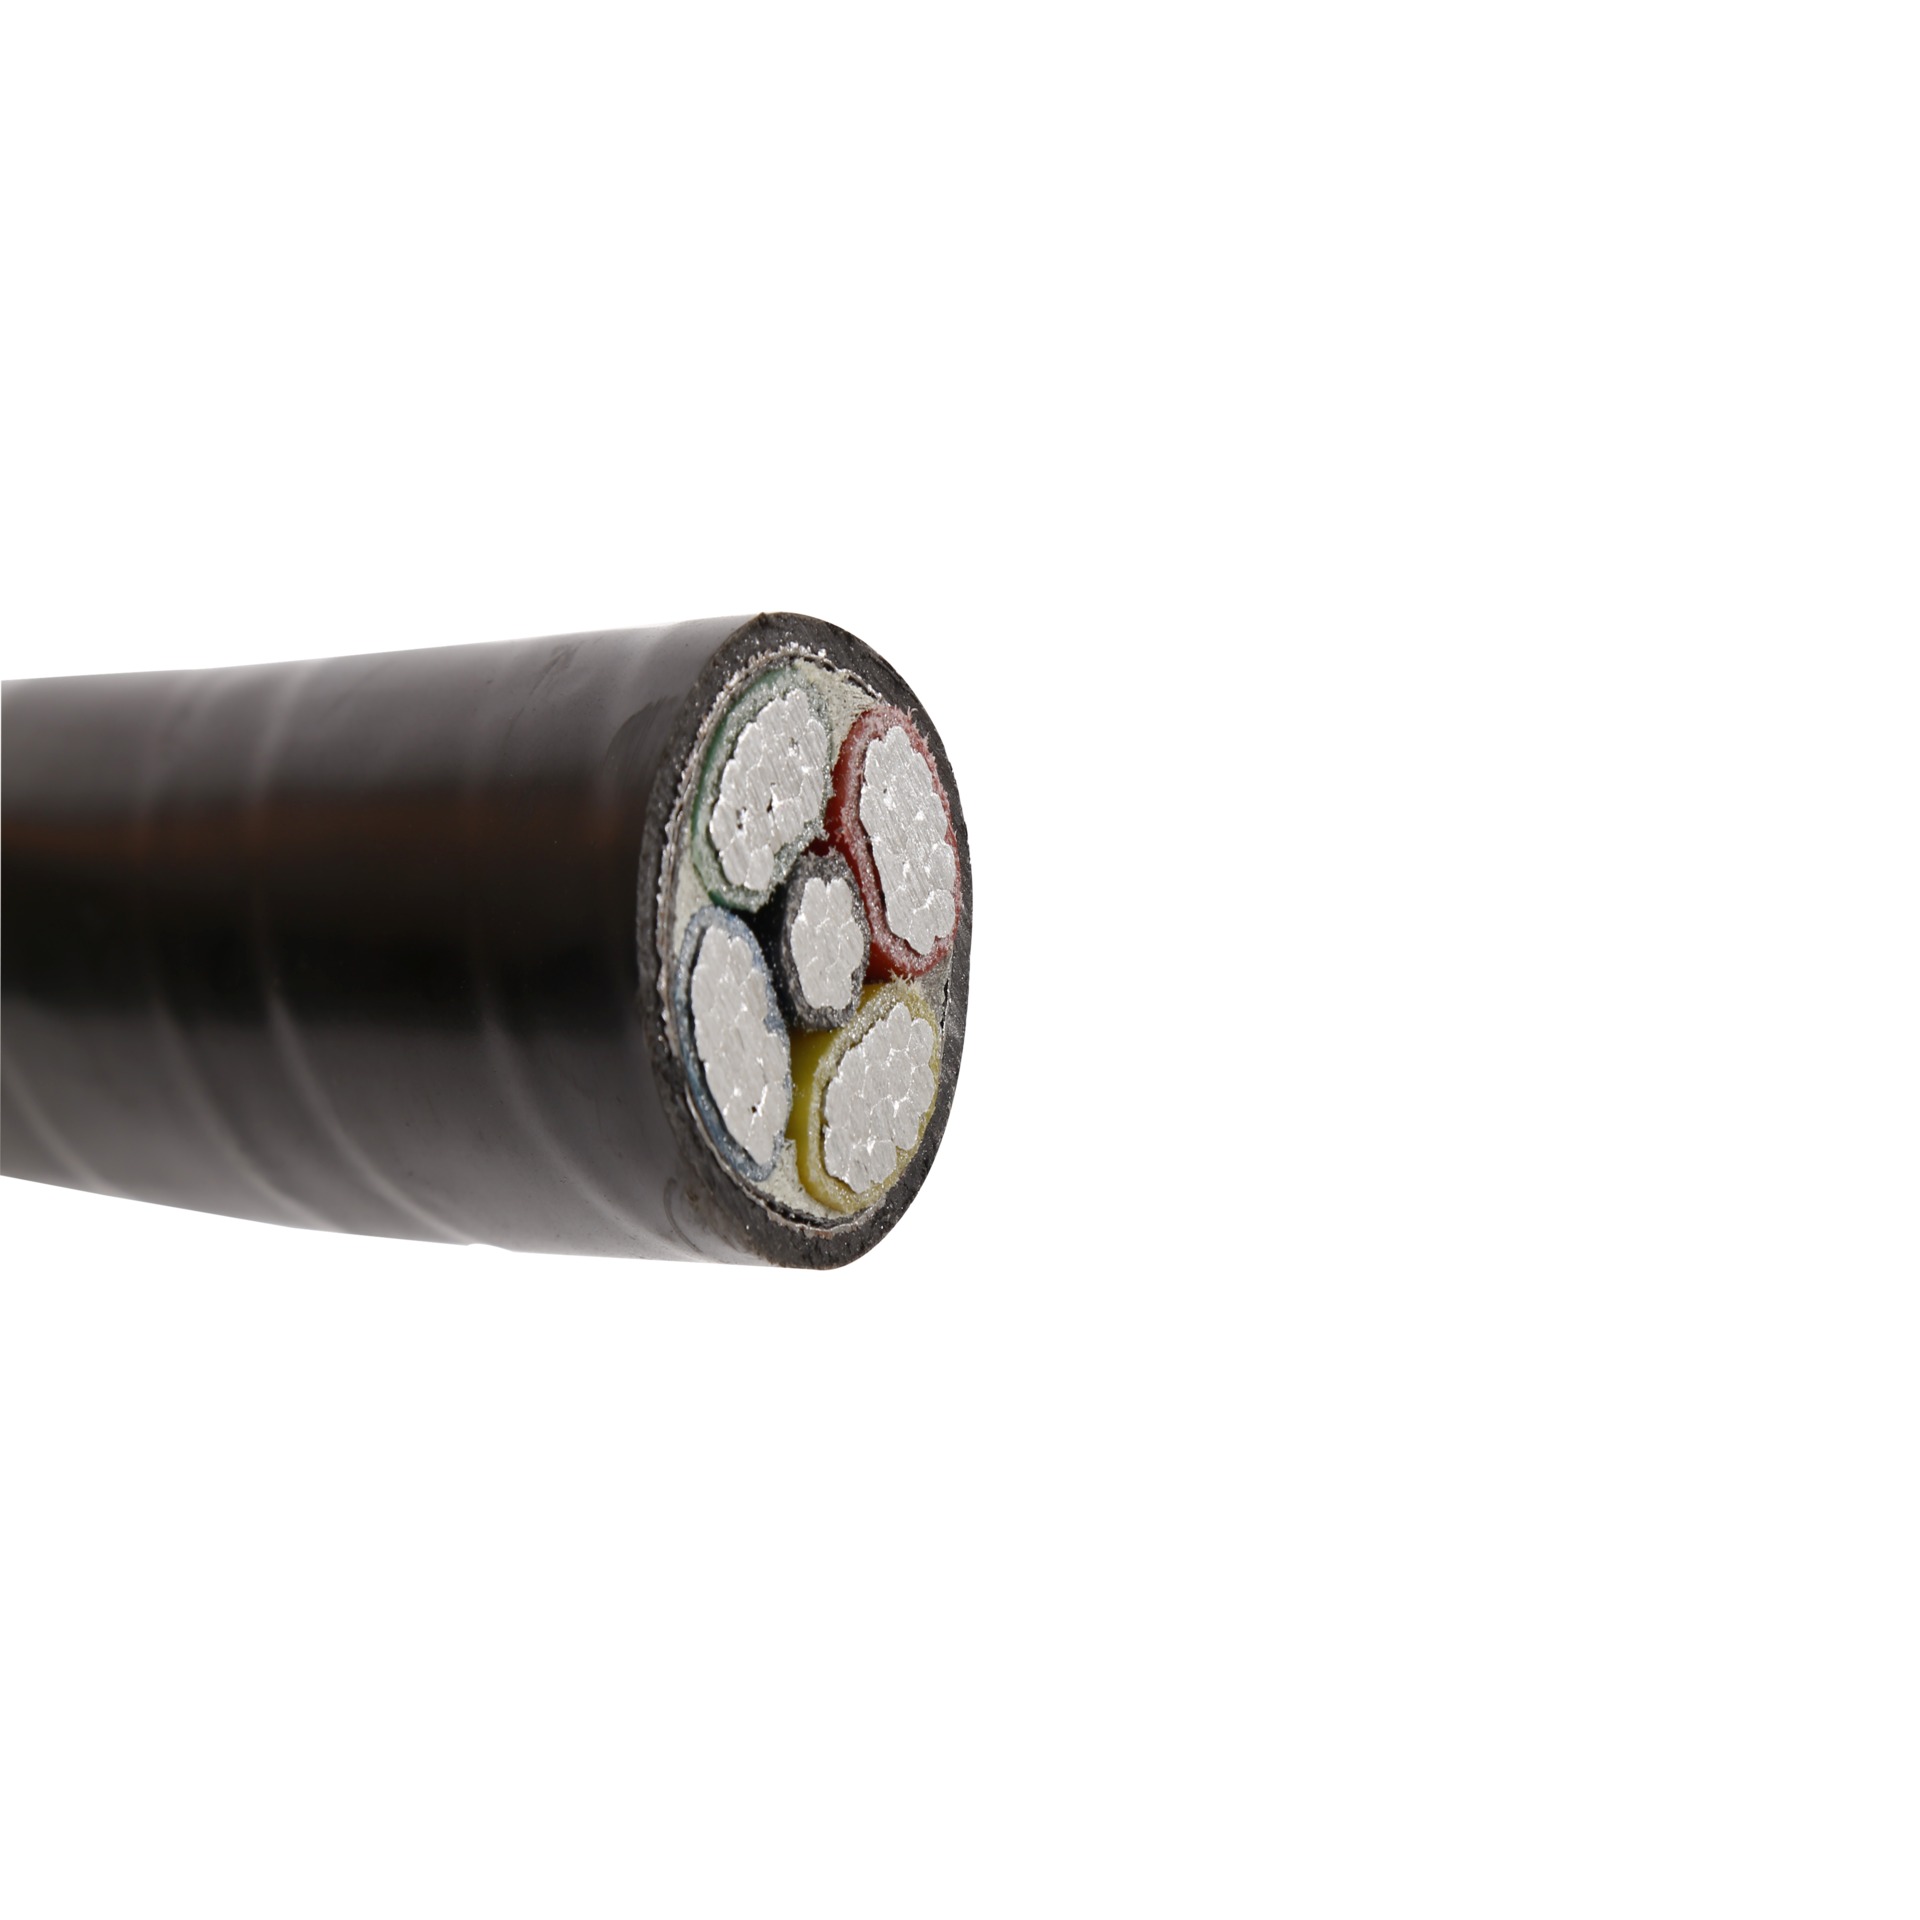 各种型号 电力电缆 高低压电缆 地埋带铠电缆 架空电缆